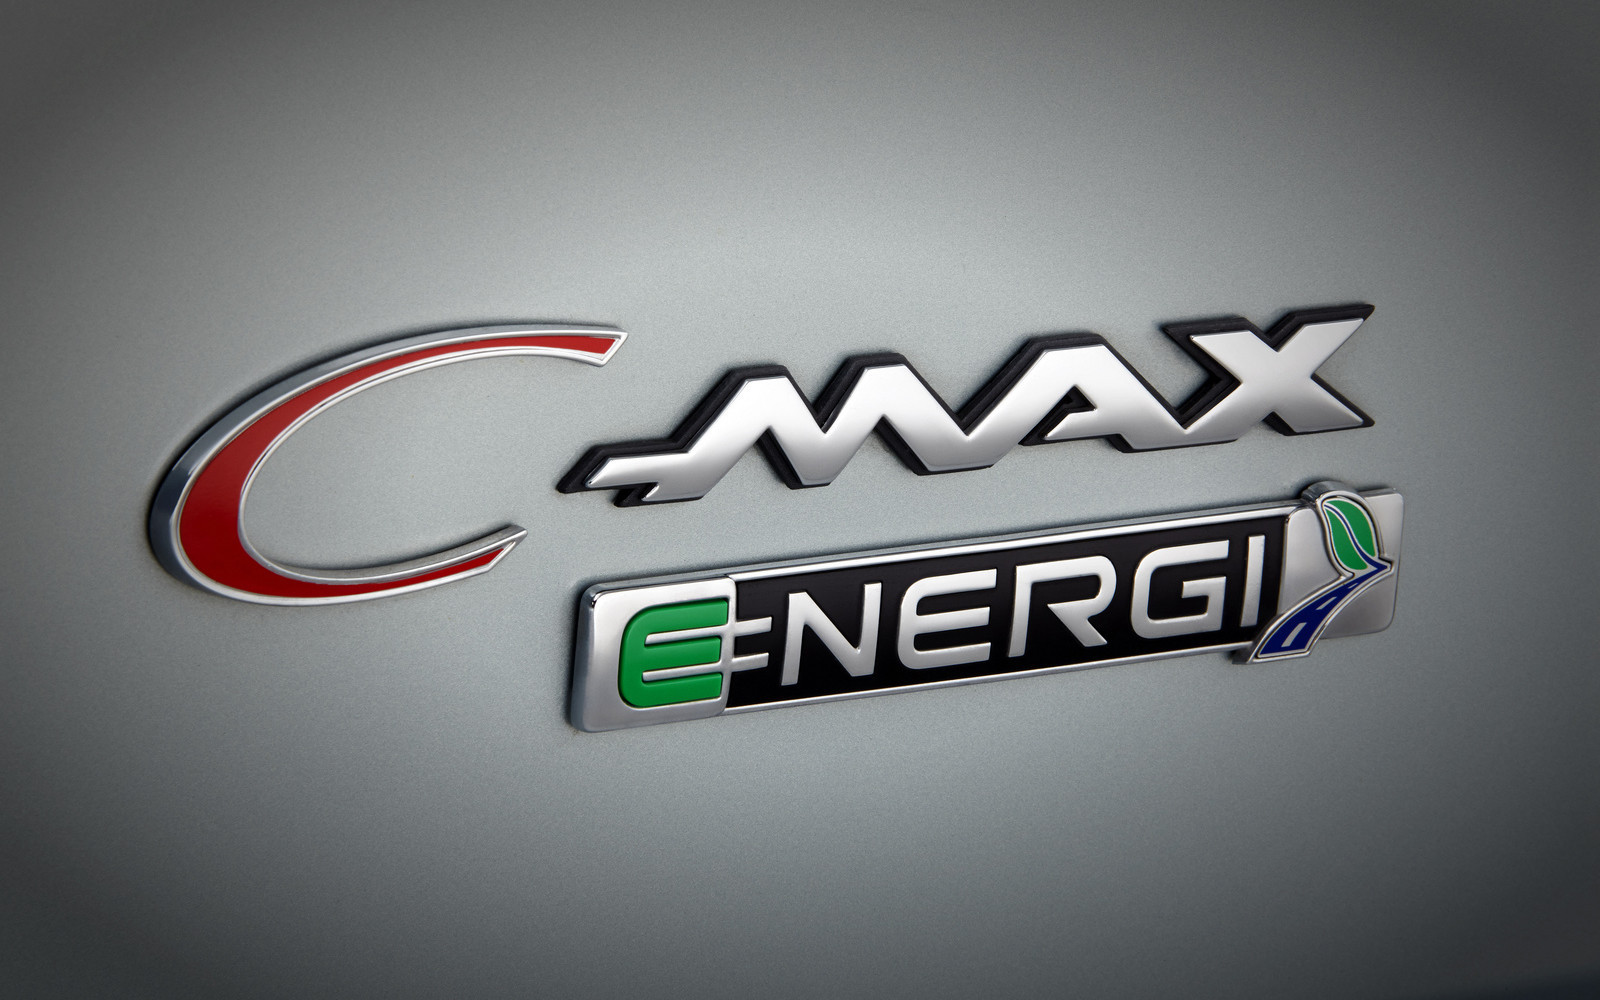 2014款福特C-MAXSolarEnergi太阳能概念车